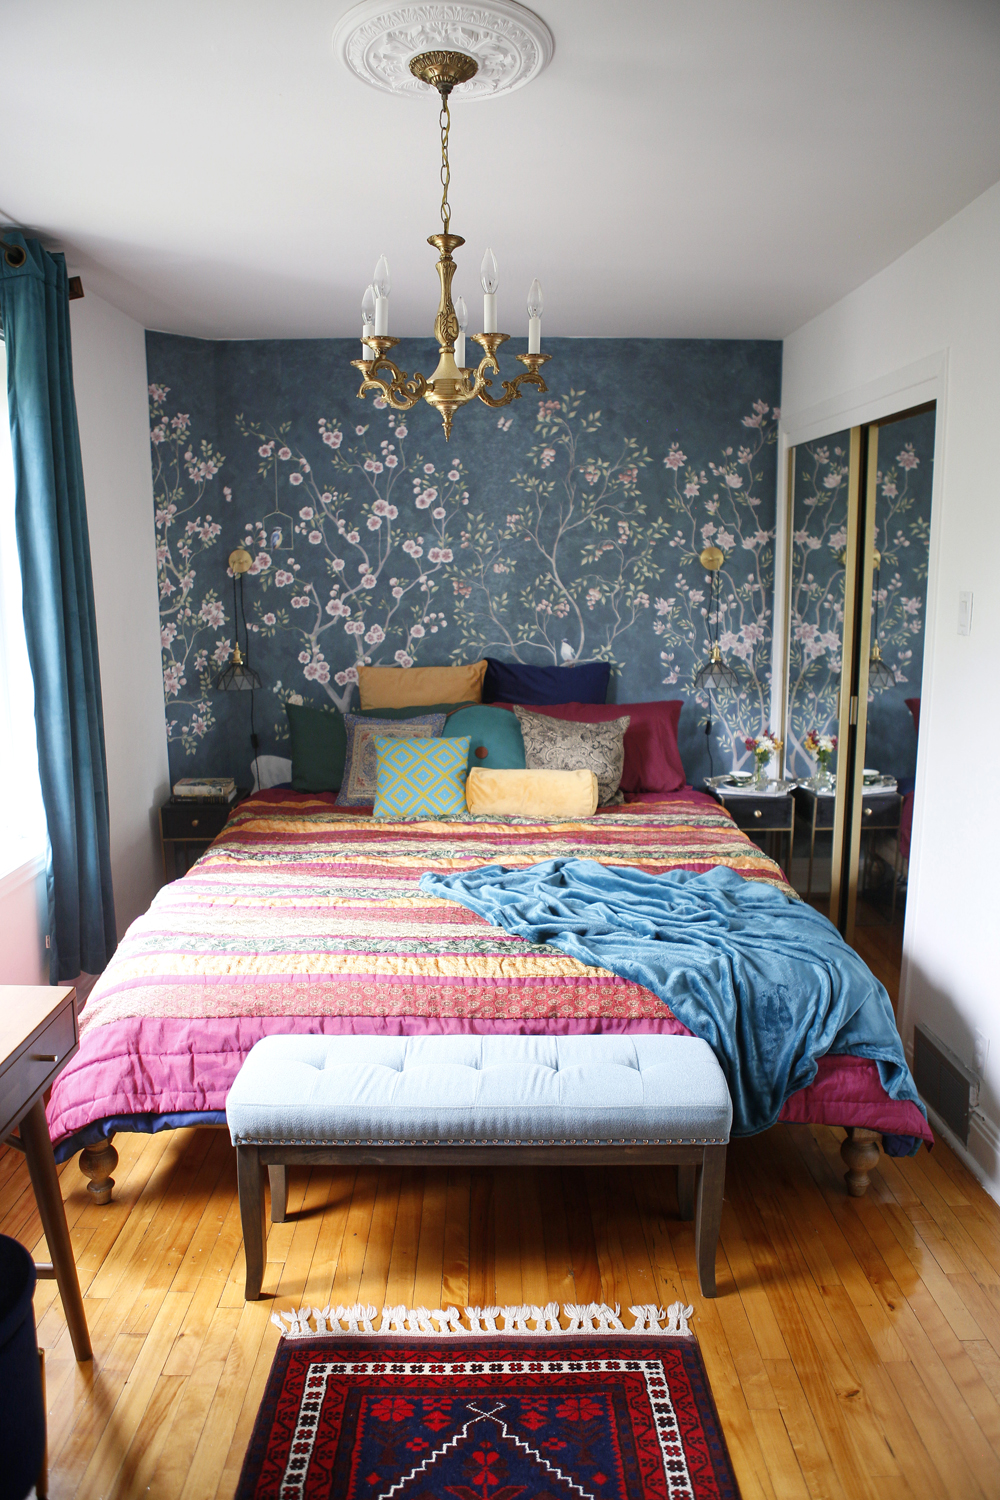 Bedroom with jewel tones